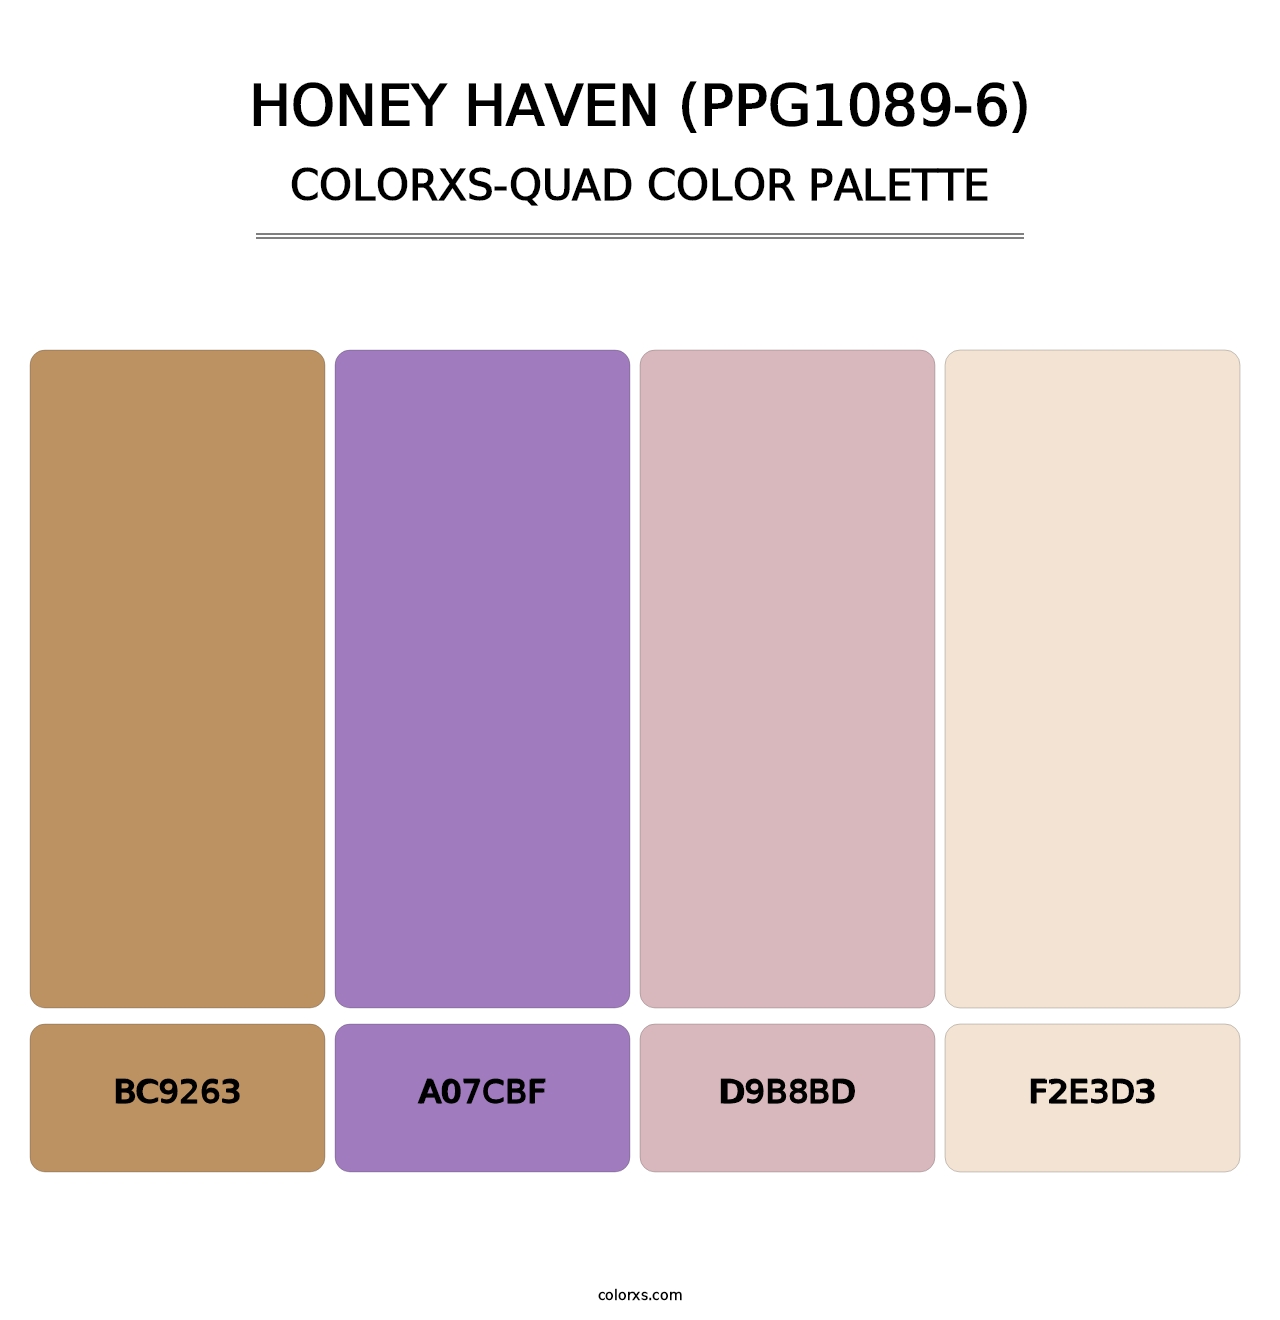 Honey Haven (PPG1089-6) - Colorxs Quad Palette